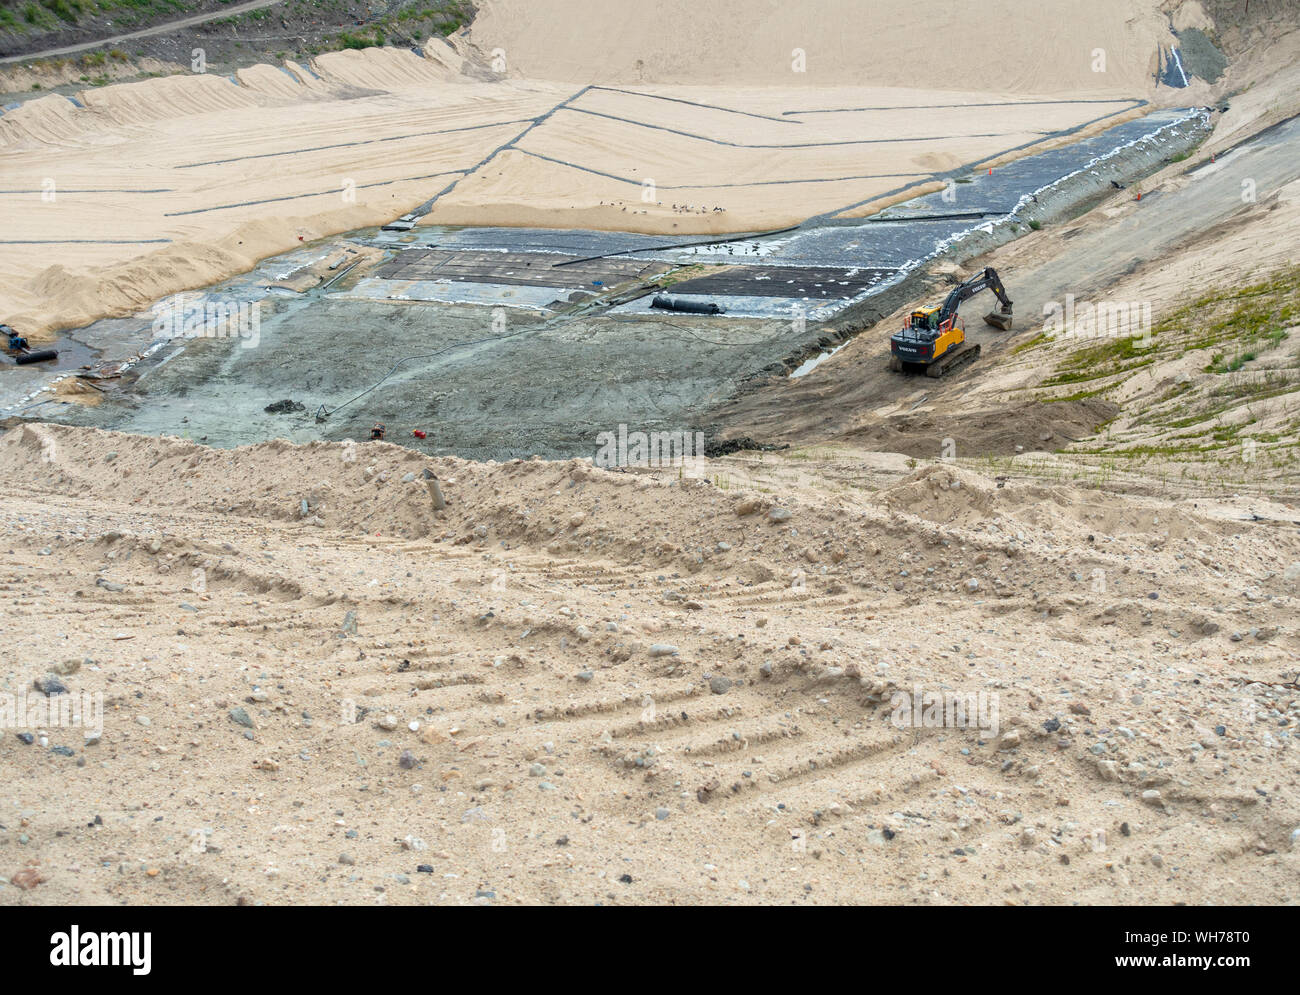 Une pelleteuse se trouve au bas de l'enfouissement en construction site d'immersion, de cellules d'argile géosynthétique est installé et recouvert de sable Banque D'Images